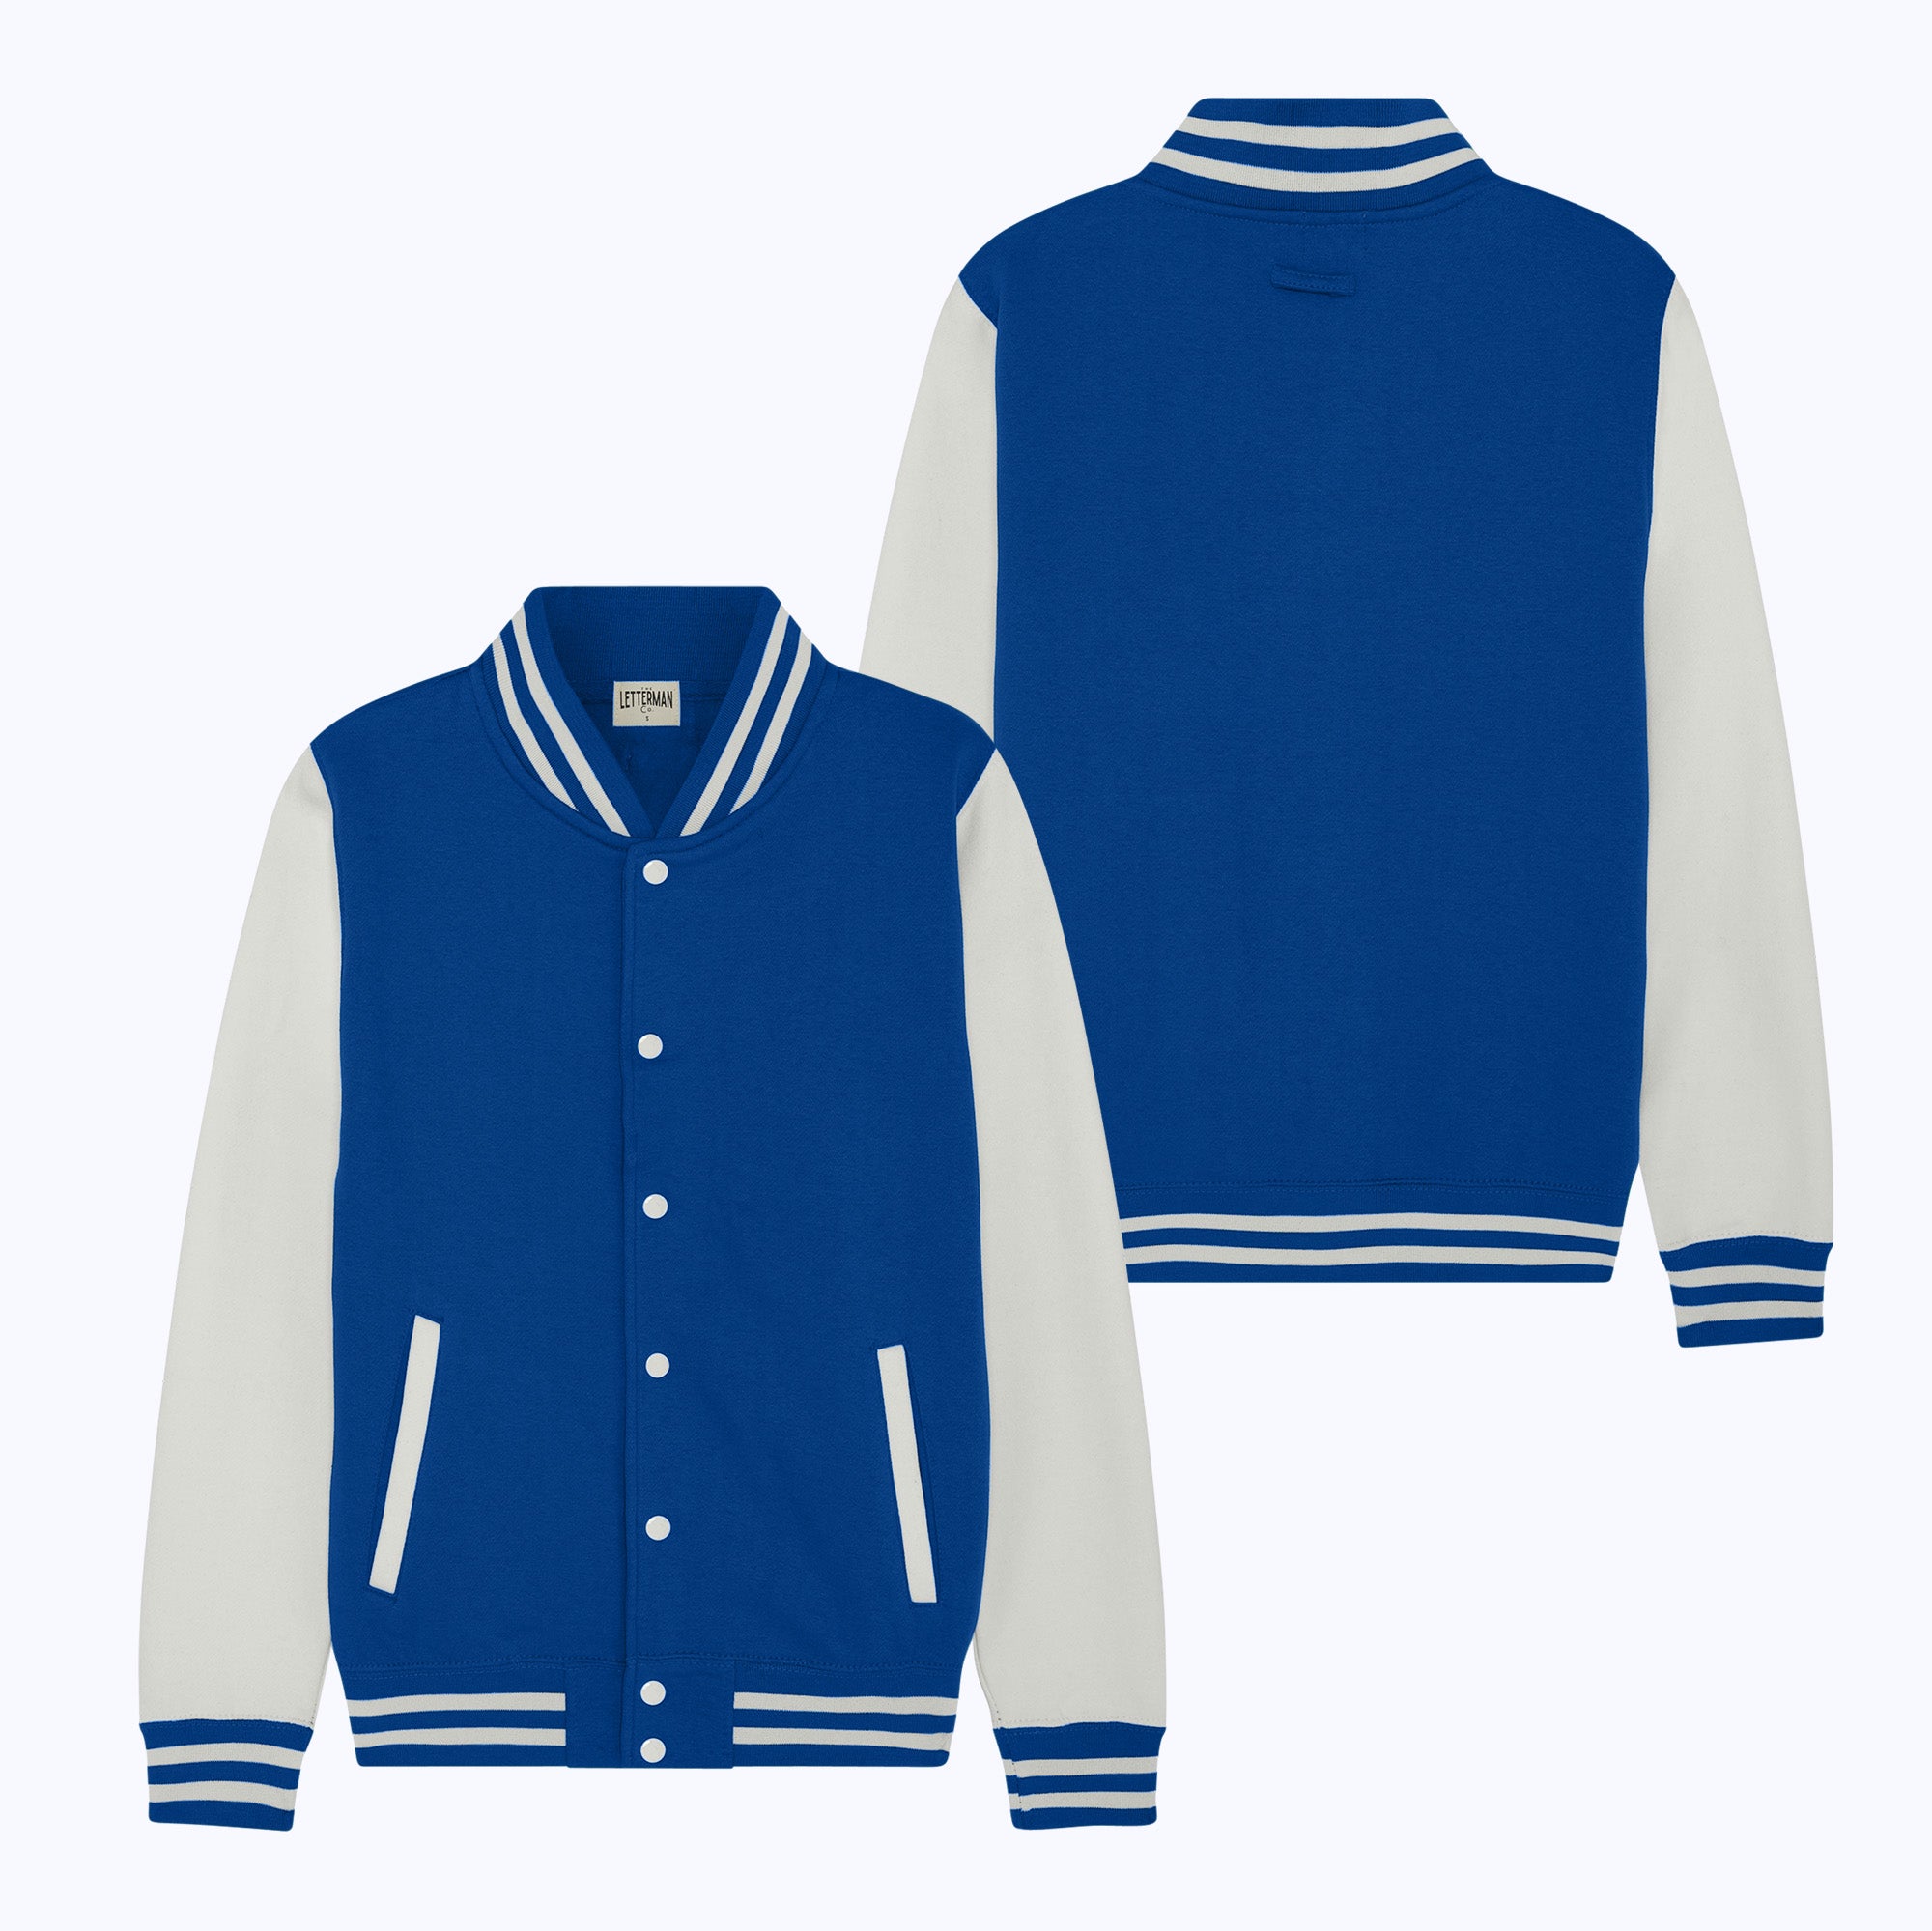 Blue And White Full Sleeves Custom Logo Design Men Cotton Varsity